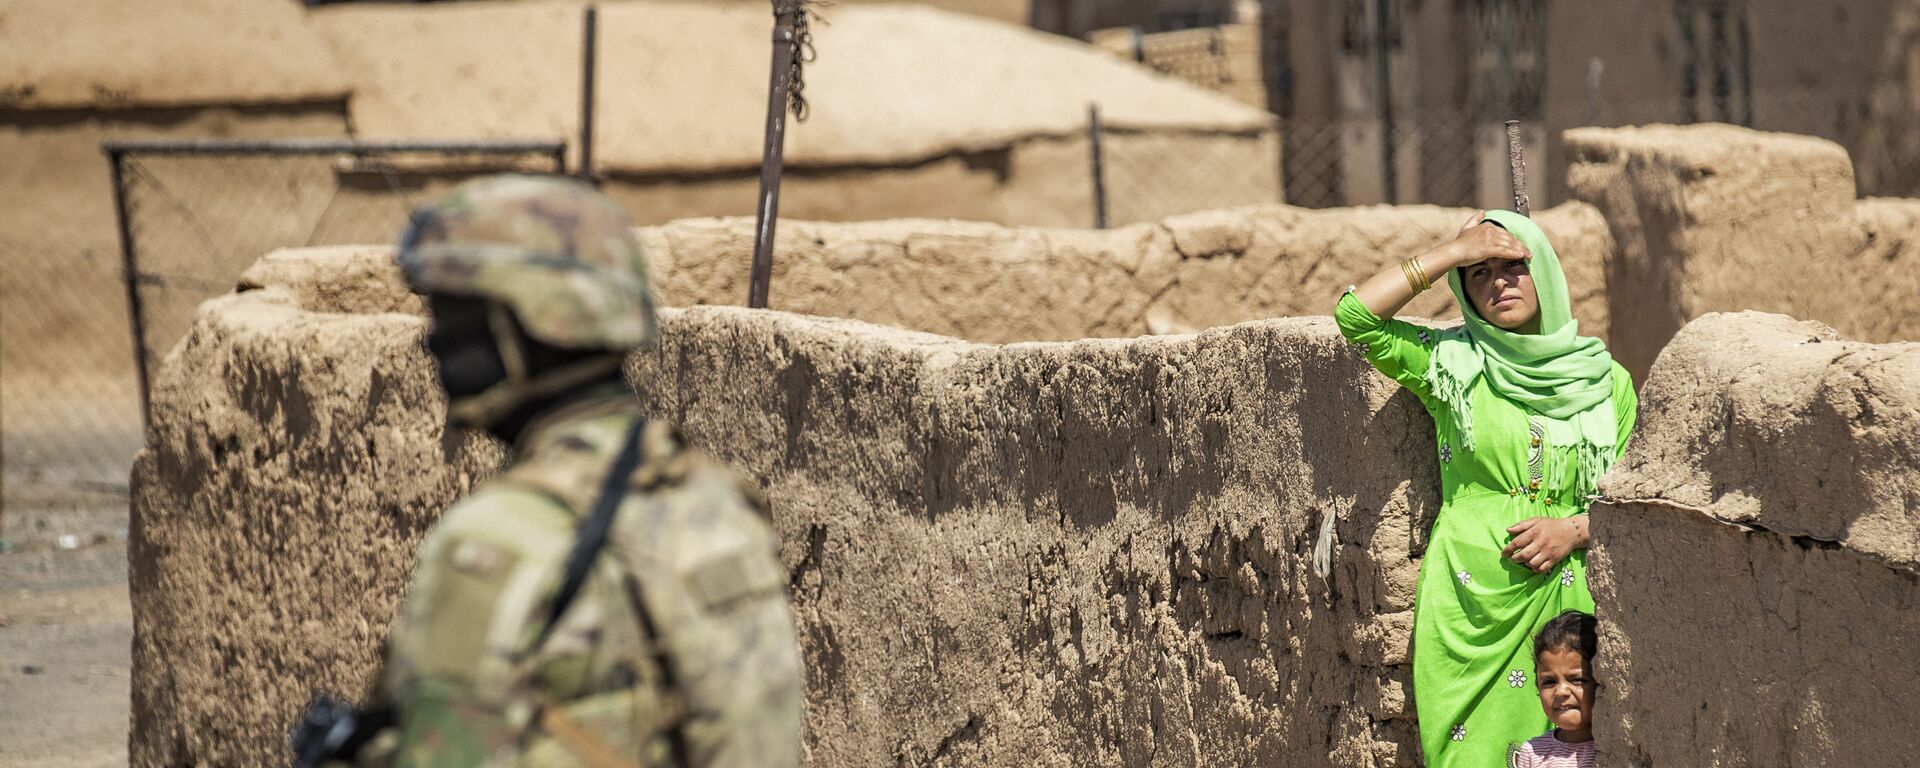   امرأة وطفل ينظران إلى جندي أمريكي يقف خلال دورية عسكرية أمريكية في الرميلان، في محافظة الحسكة شمال شرق سوريا، 22 يونيو 2021 - سبوتنيك عربي, 1920, 24.10.2021